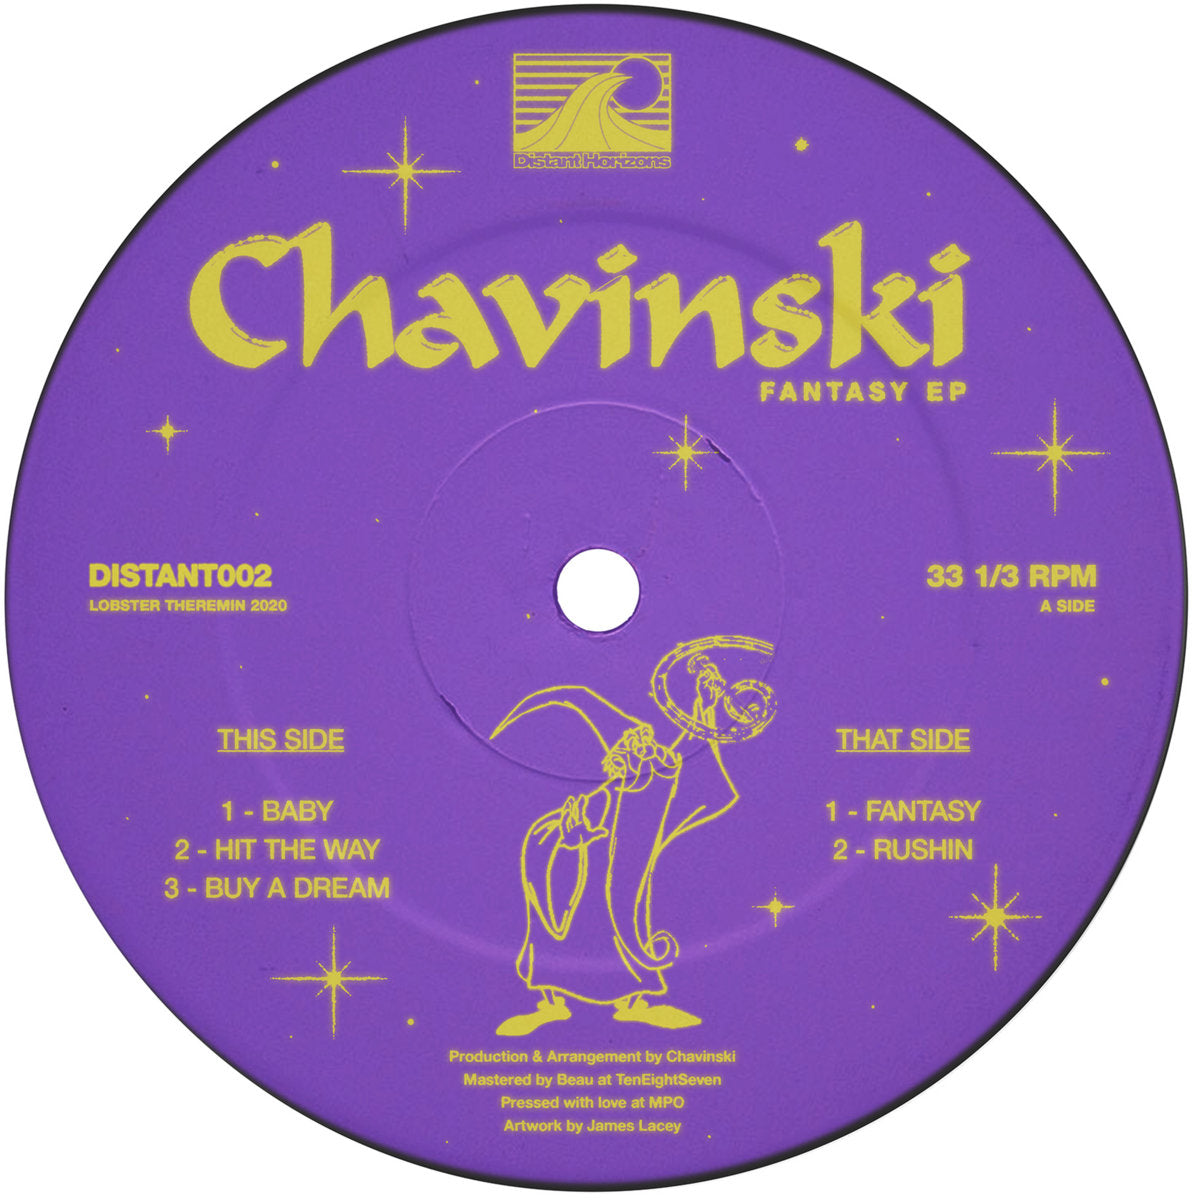 Fantasy EP - Chavinsky